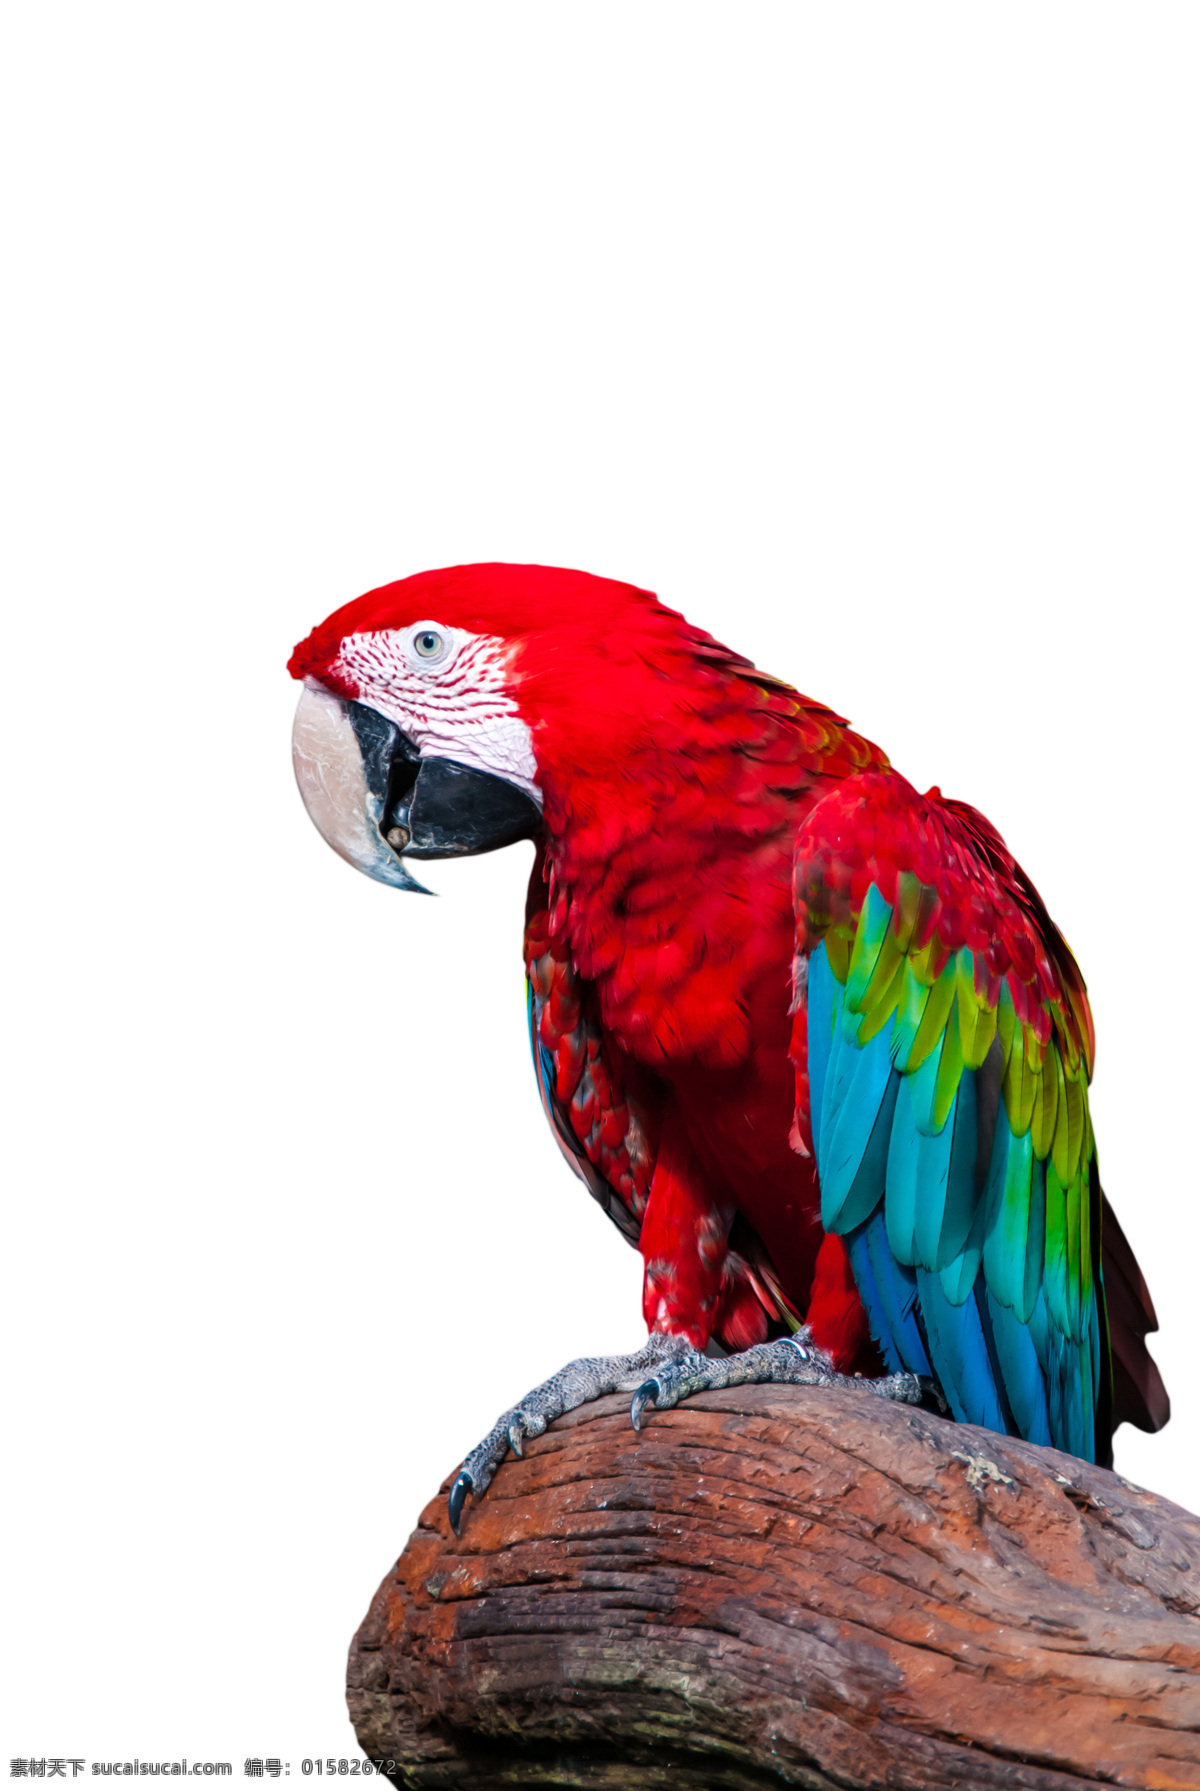 红色鹦鹉 小鸟 飞鸟 鸟类动物 飞禽 野生动物 动物摄影 空中飞鸟 生物世界 白色